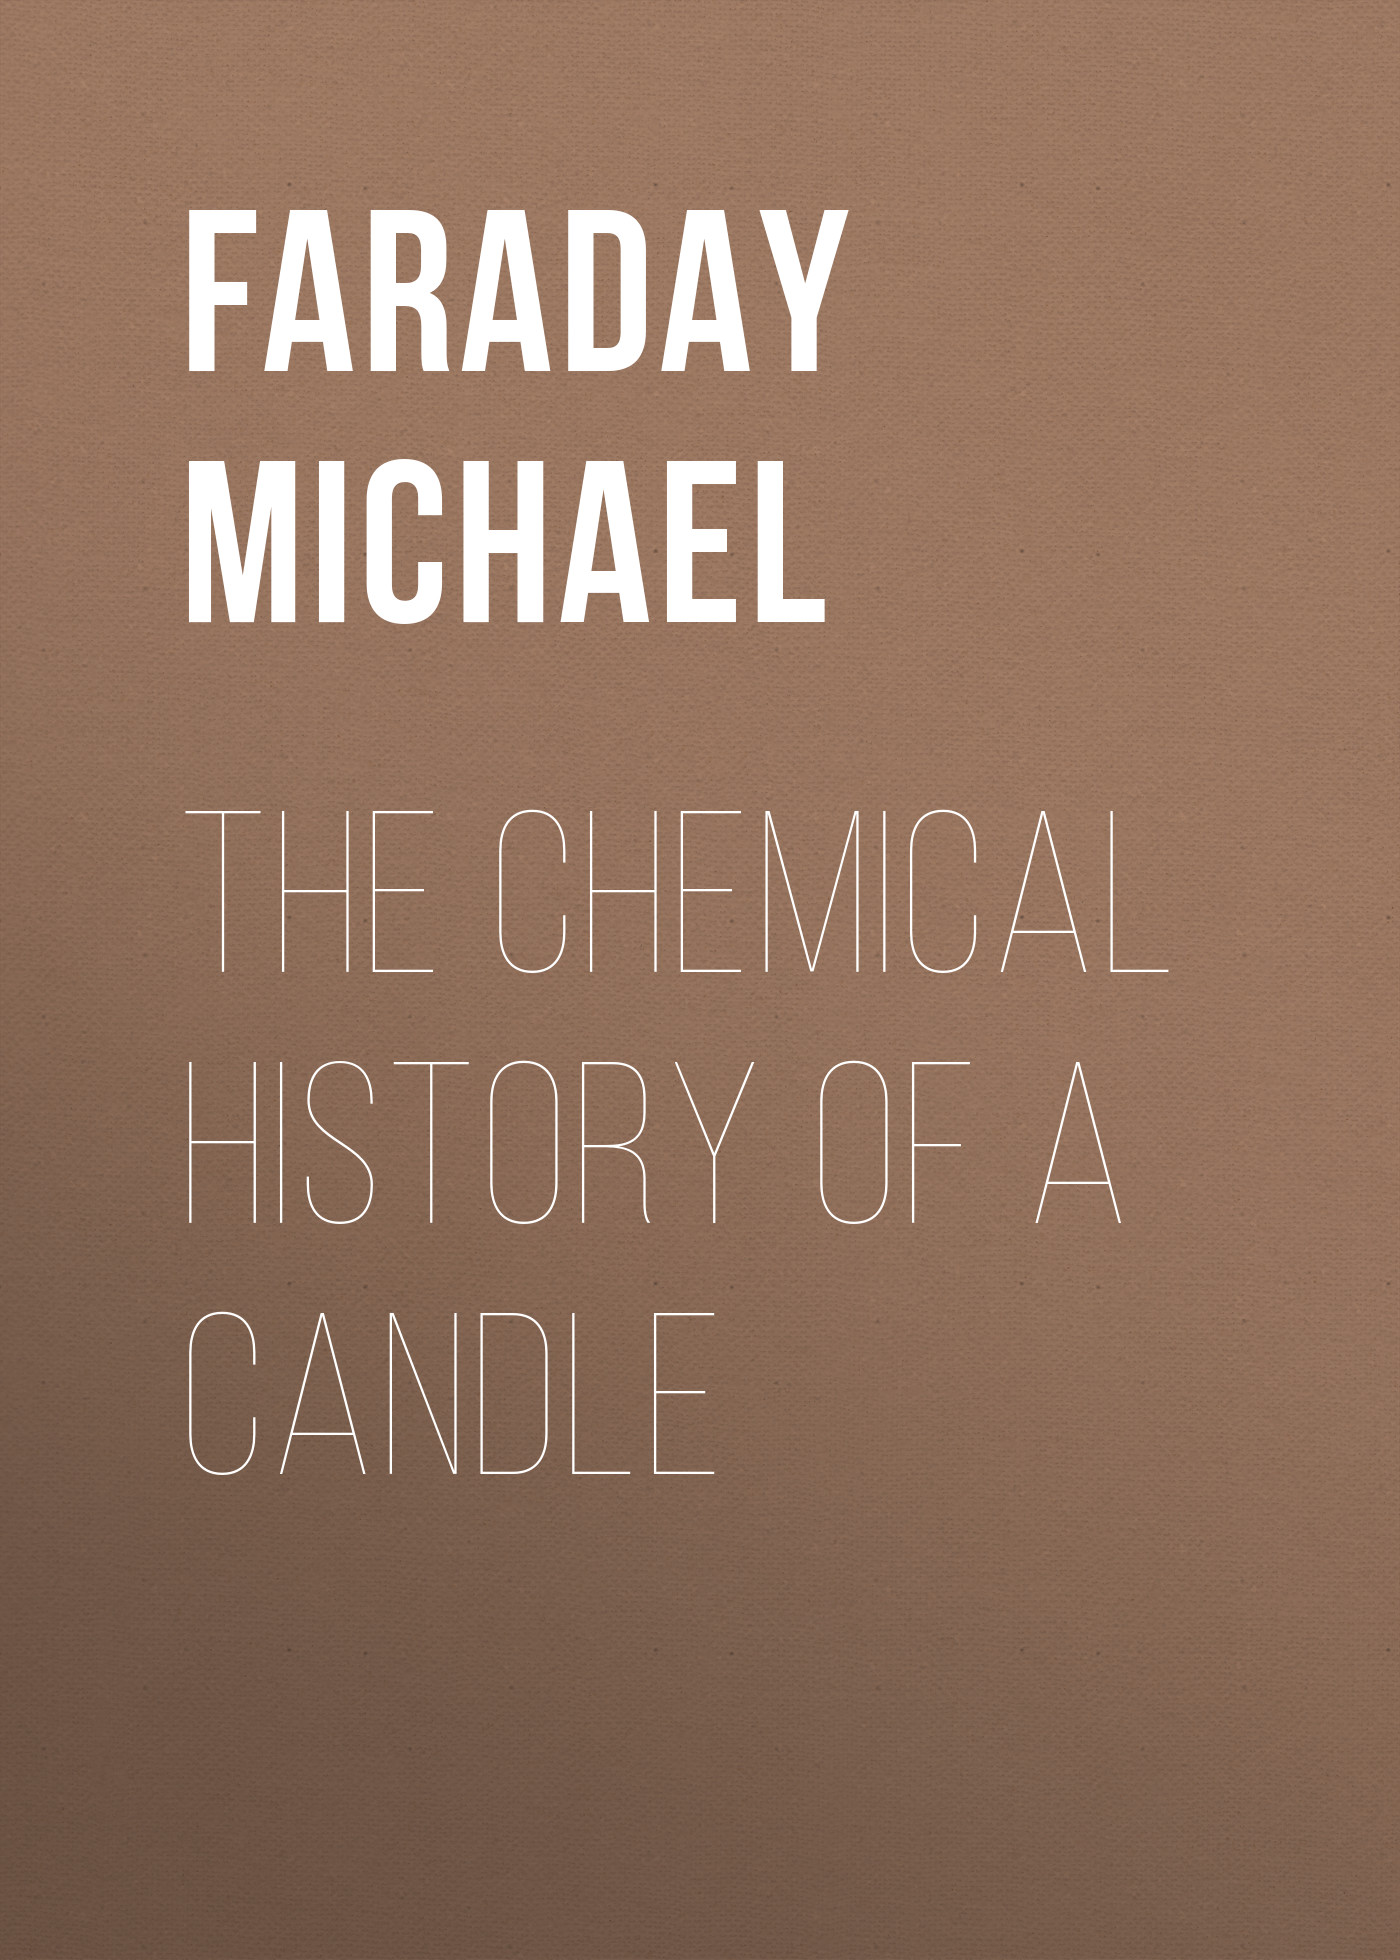 Книга The Chemical History of a Candle из серии , созданная Michael Faraday, может относится к жанру Зарубежная образовательная литература, Химия. Стоимость электронной книги The Chemical History of a Candle с идентификатором 36322004 составляет 0 руб.